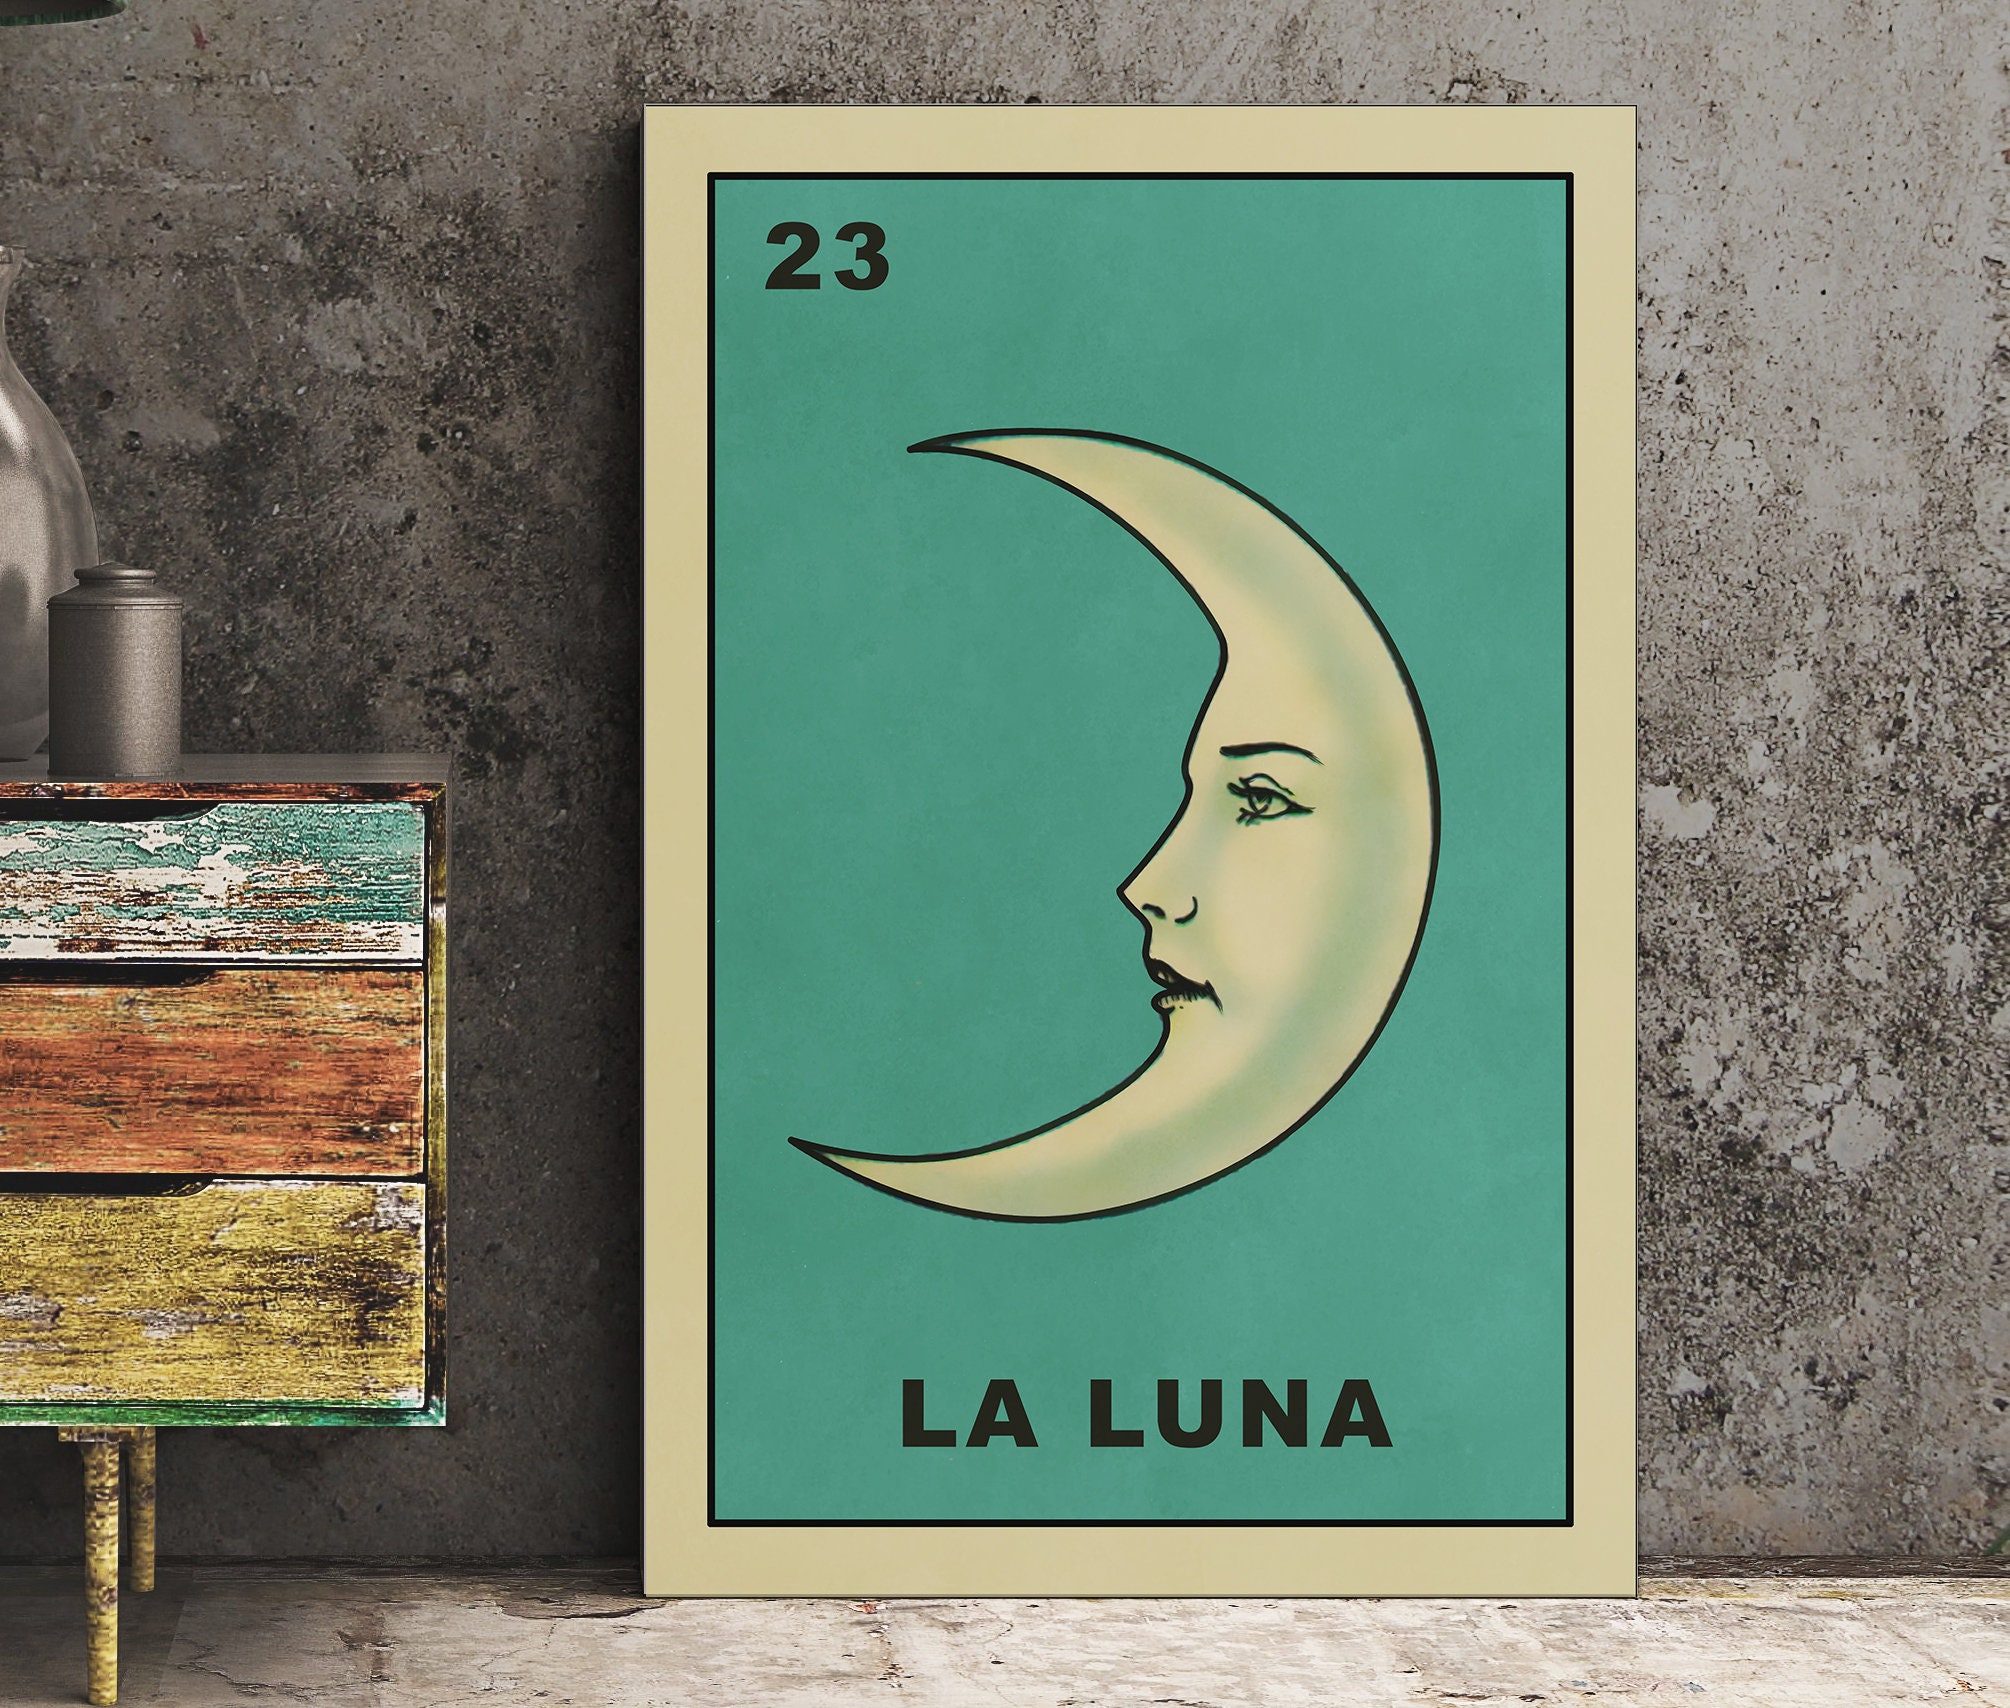 Full Moon Poster Art, Lunar Moon Print, Digital Download La Luna